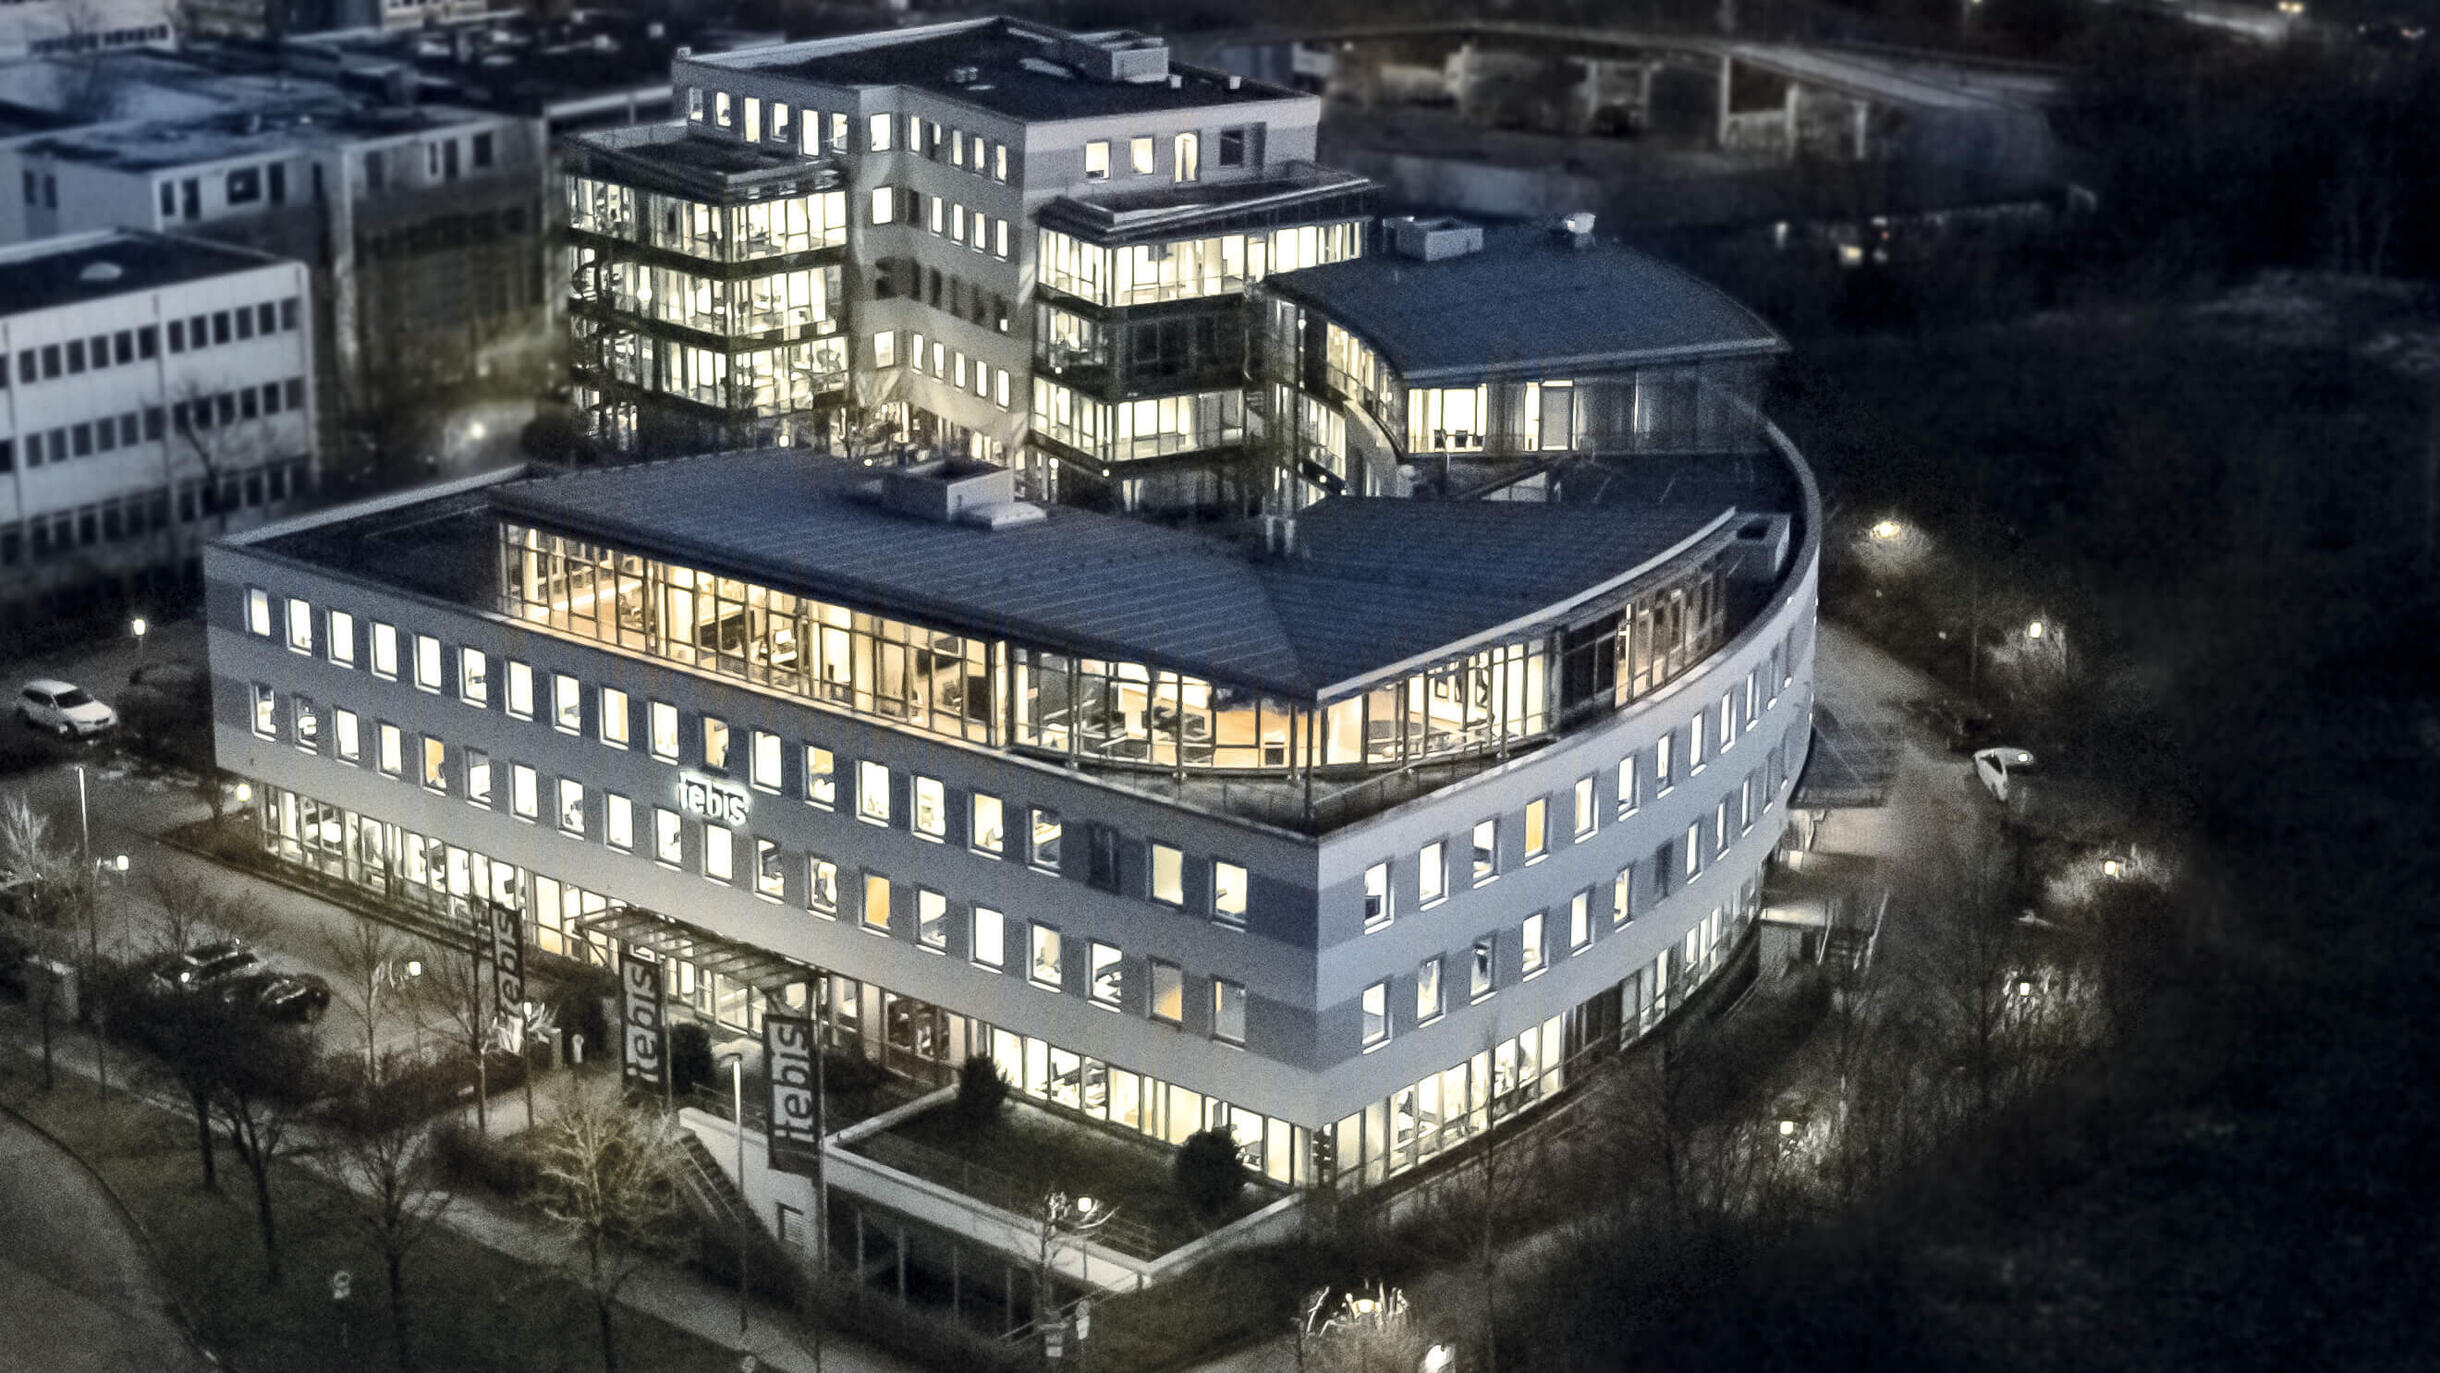 Tebis Stammhaus in Planegg bei München mit über 12.000qm Büro- und Nutzfläche